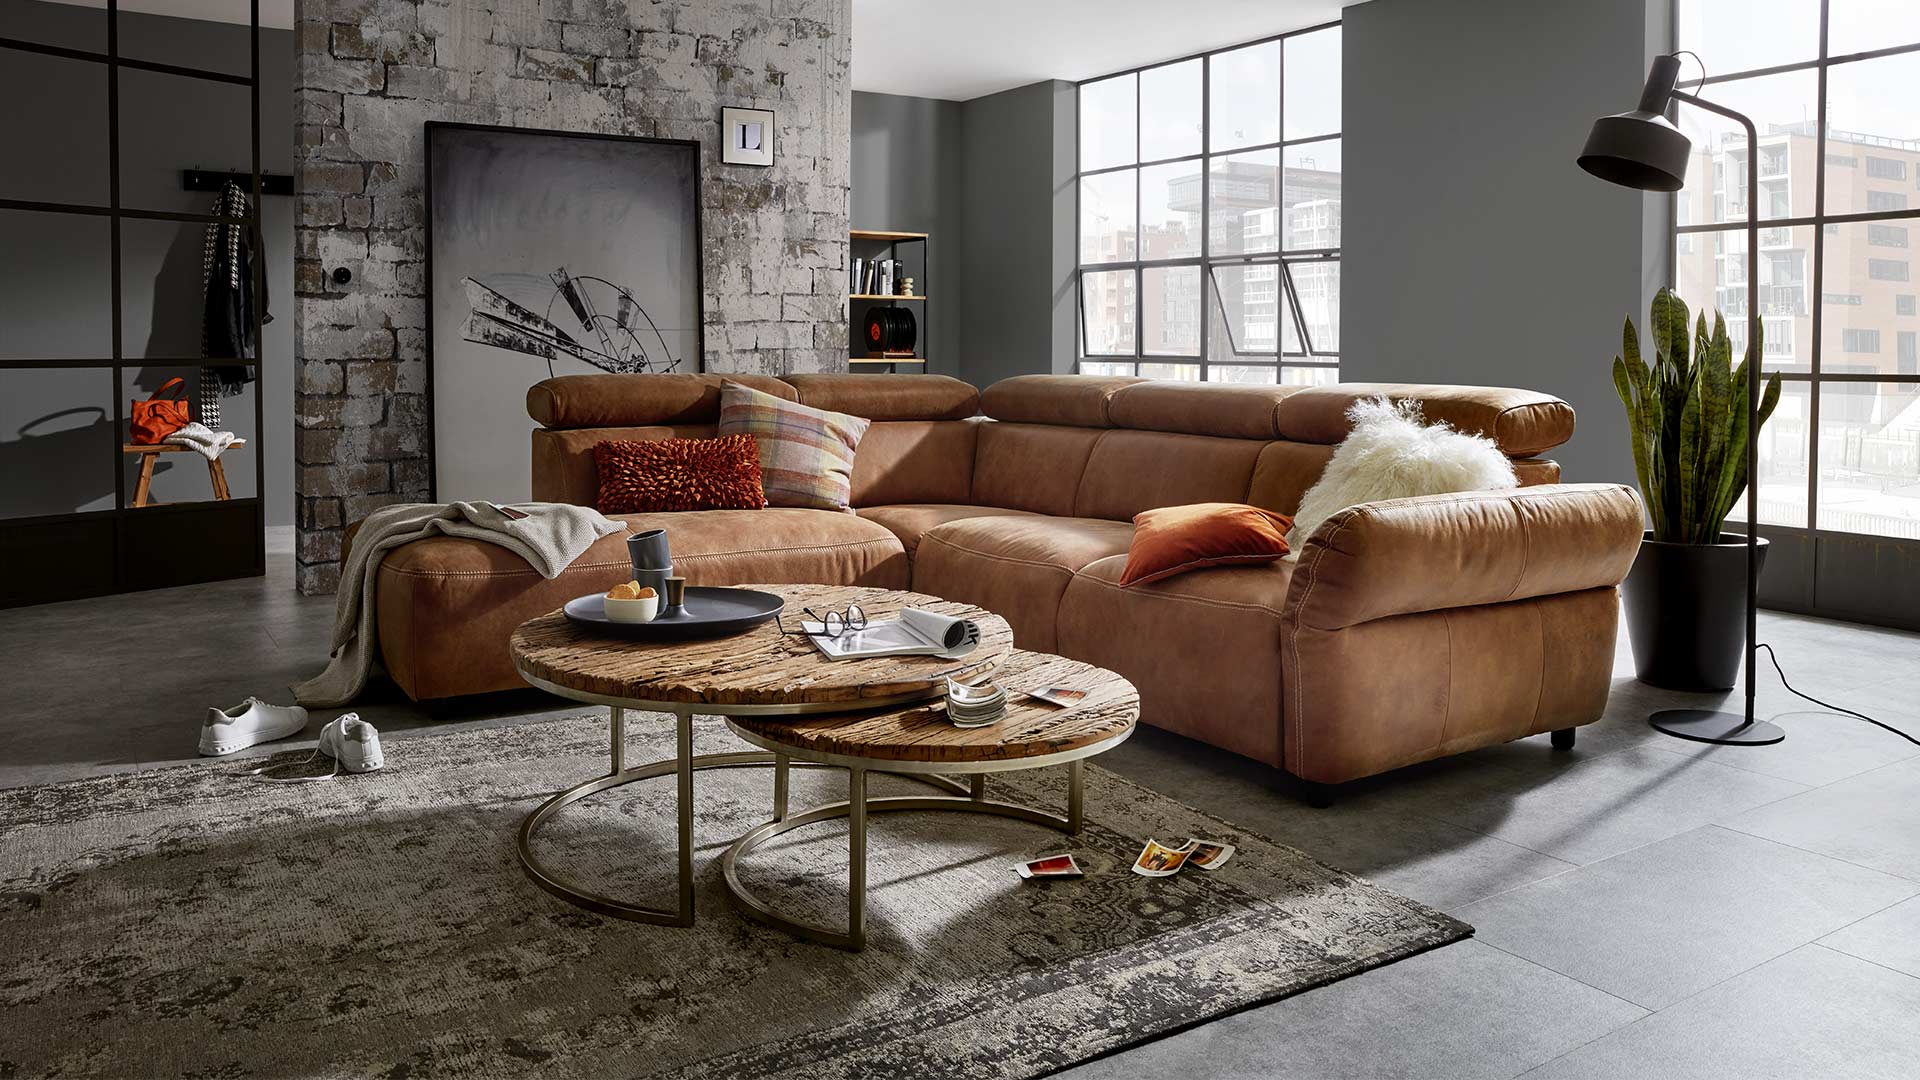 Elektrisch verstellbare Couch in braunem Leder in einemWohnzimmer im Industrial Style. 